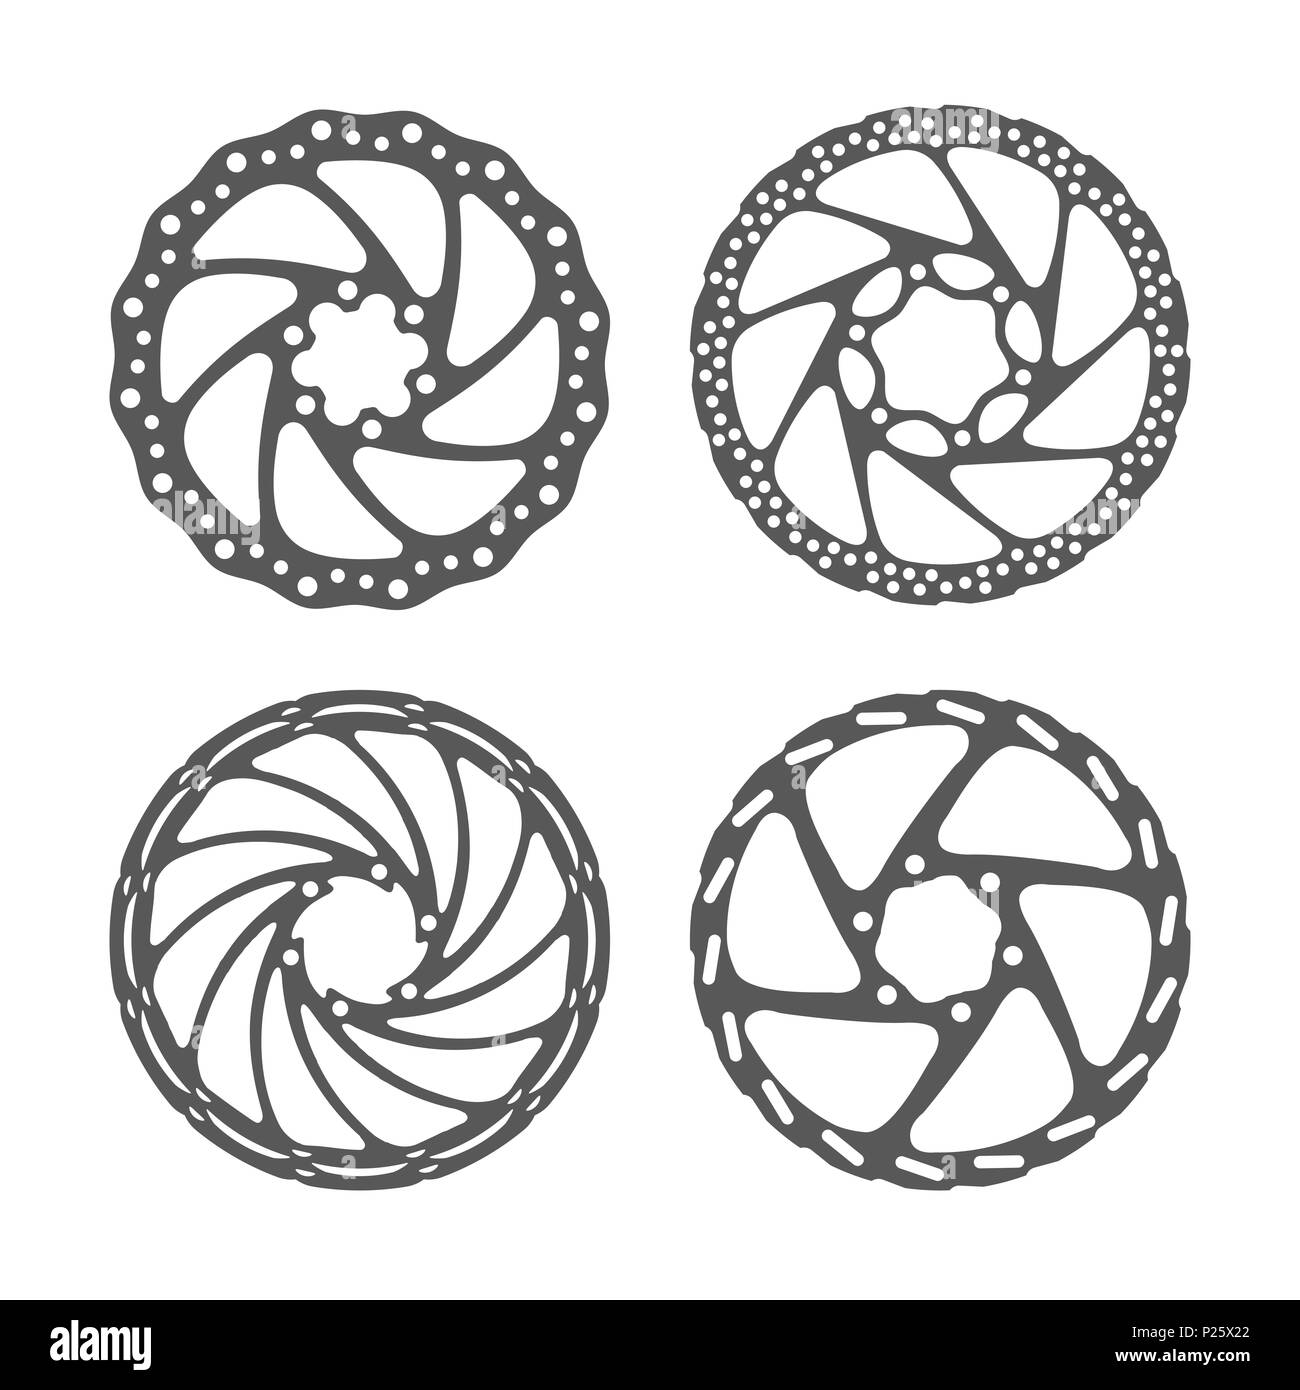 Freno a disco per bicicletta Set. Bike rotori del freno a disco di diverse forme. Illustrazione realistica. Pezzi di ricambio serie. Foto Stock